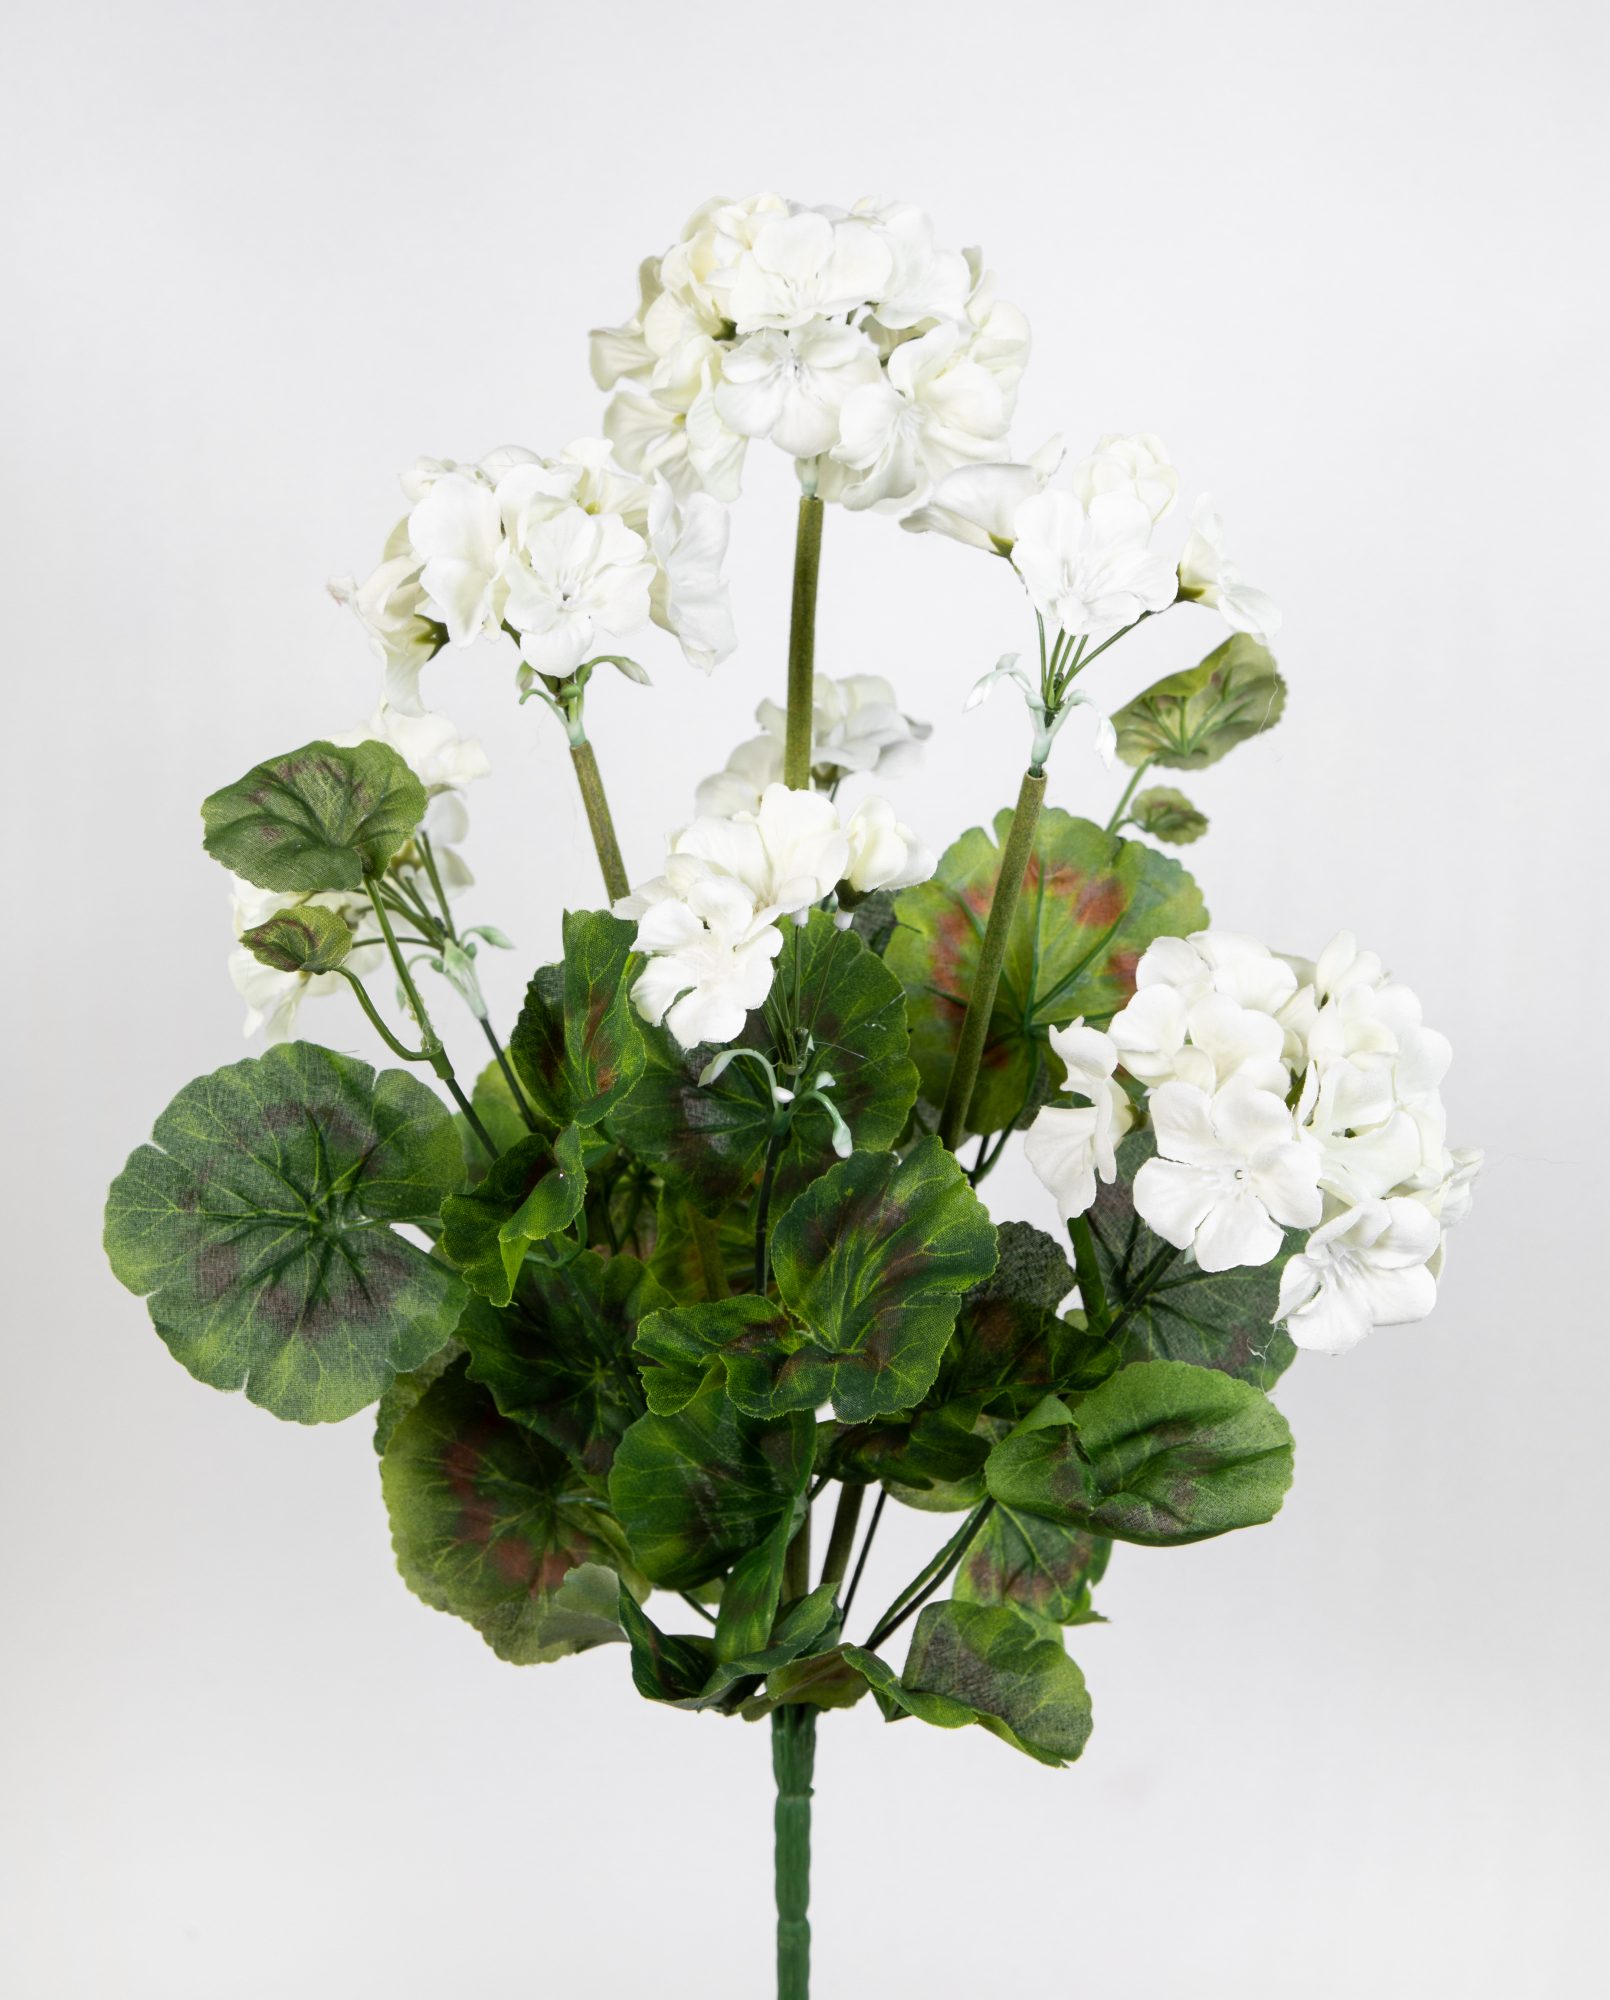 Geranie 45cm weiß -ohne Topf- JA Kunstpflanzen künstliche Pelargonium Blumen Pflanzen Kunstblumen